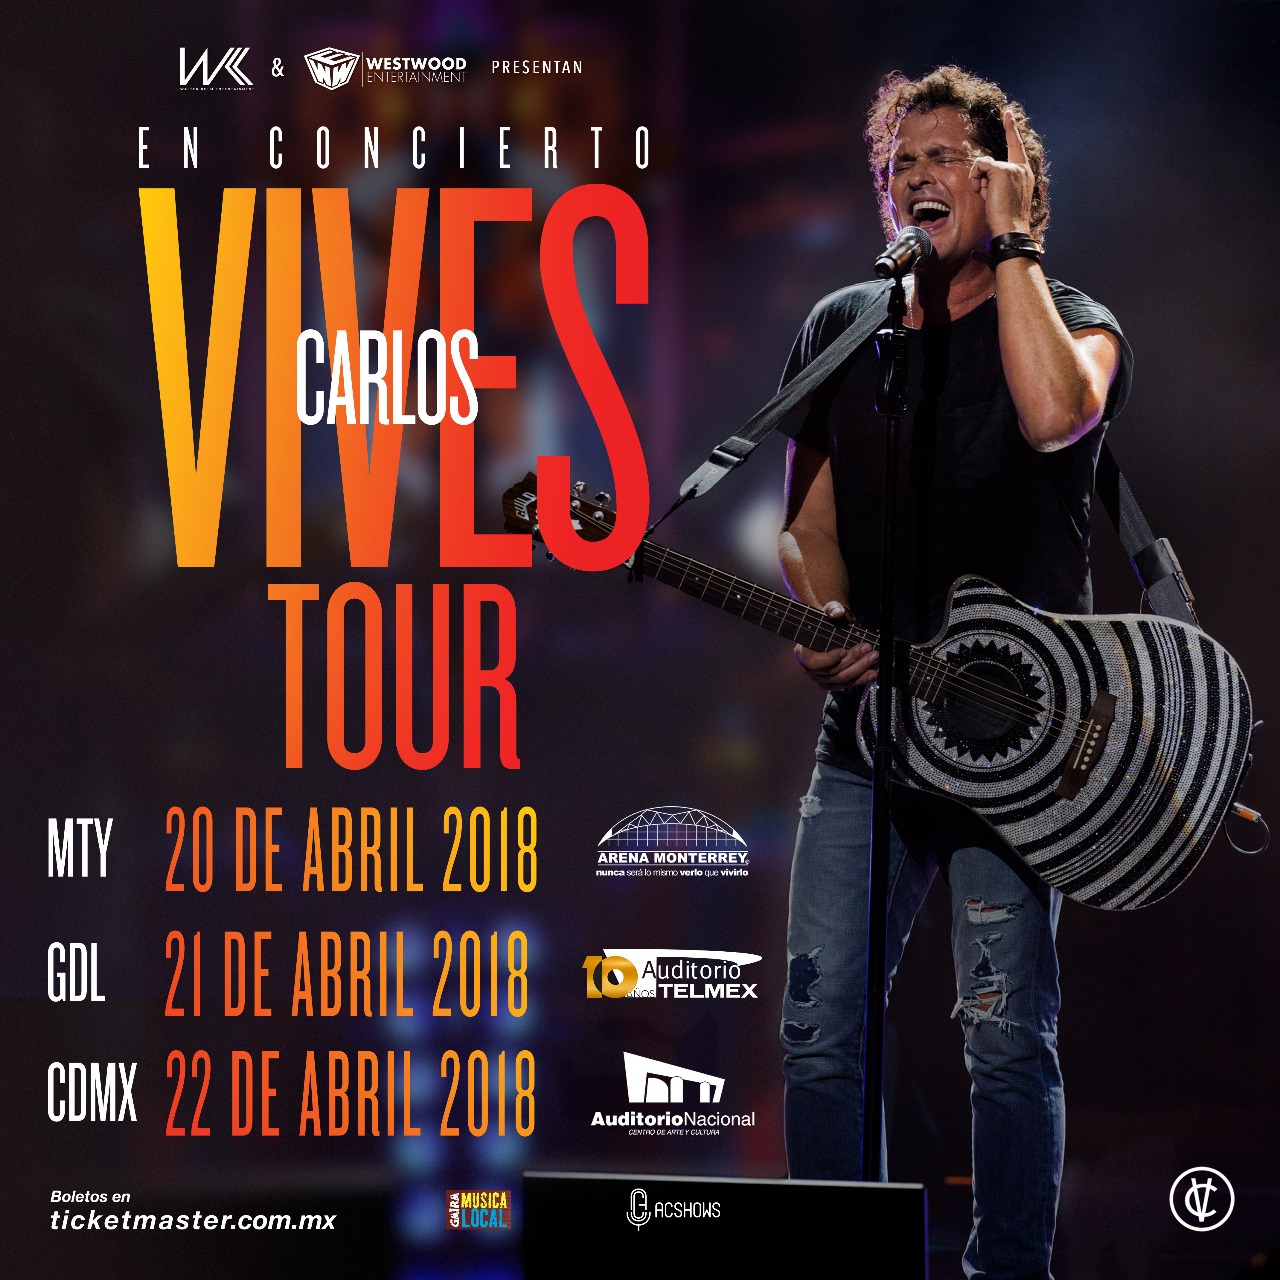 Concierto de Carlos Vives, Vives Tour, en Ciudad de México, México, Jueves, 22 de marzo de 2018